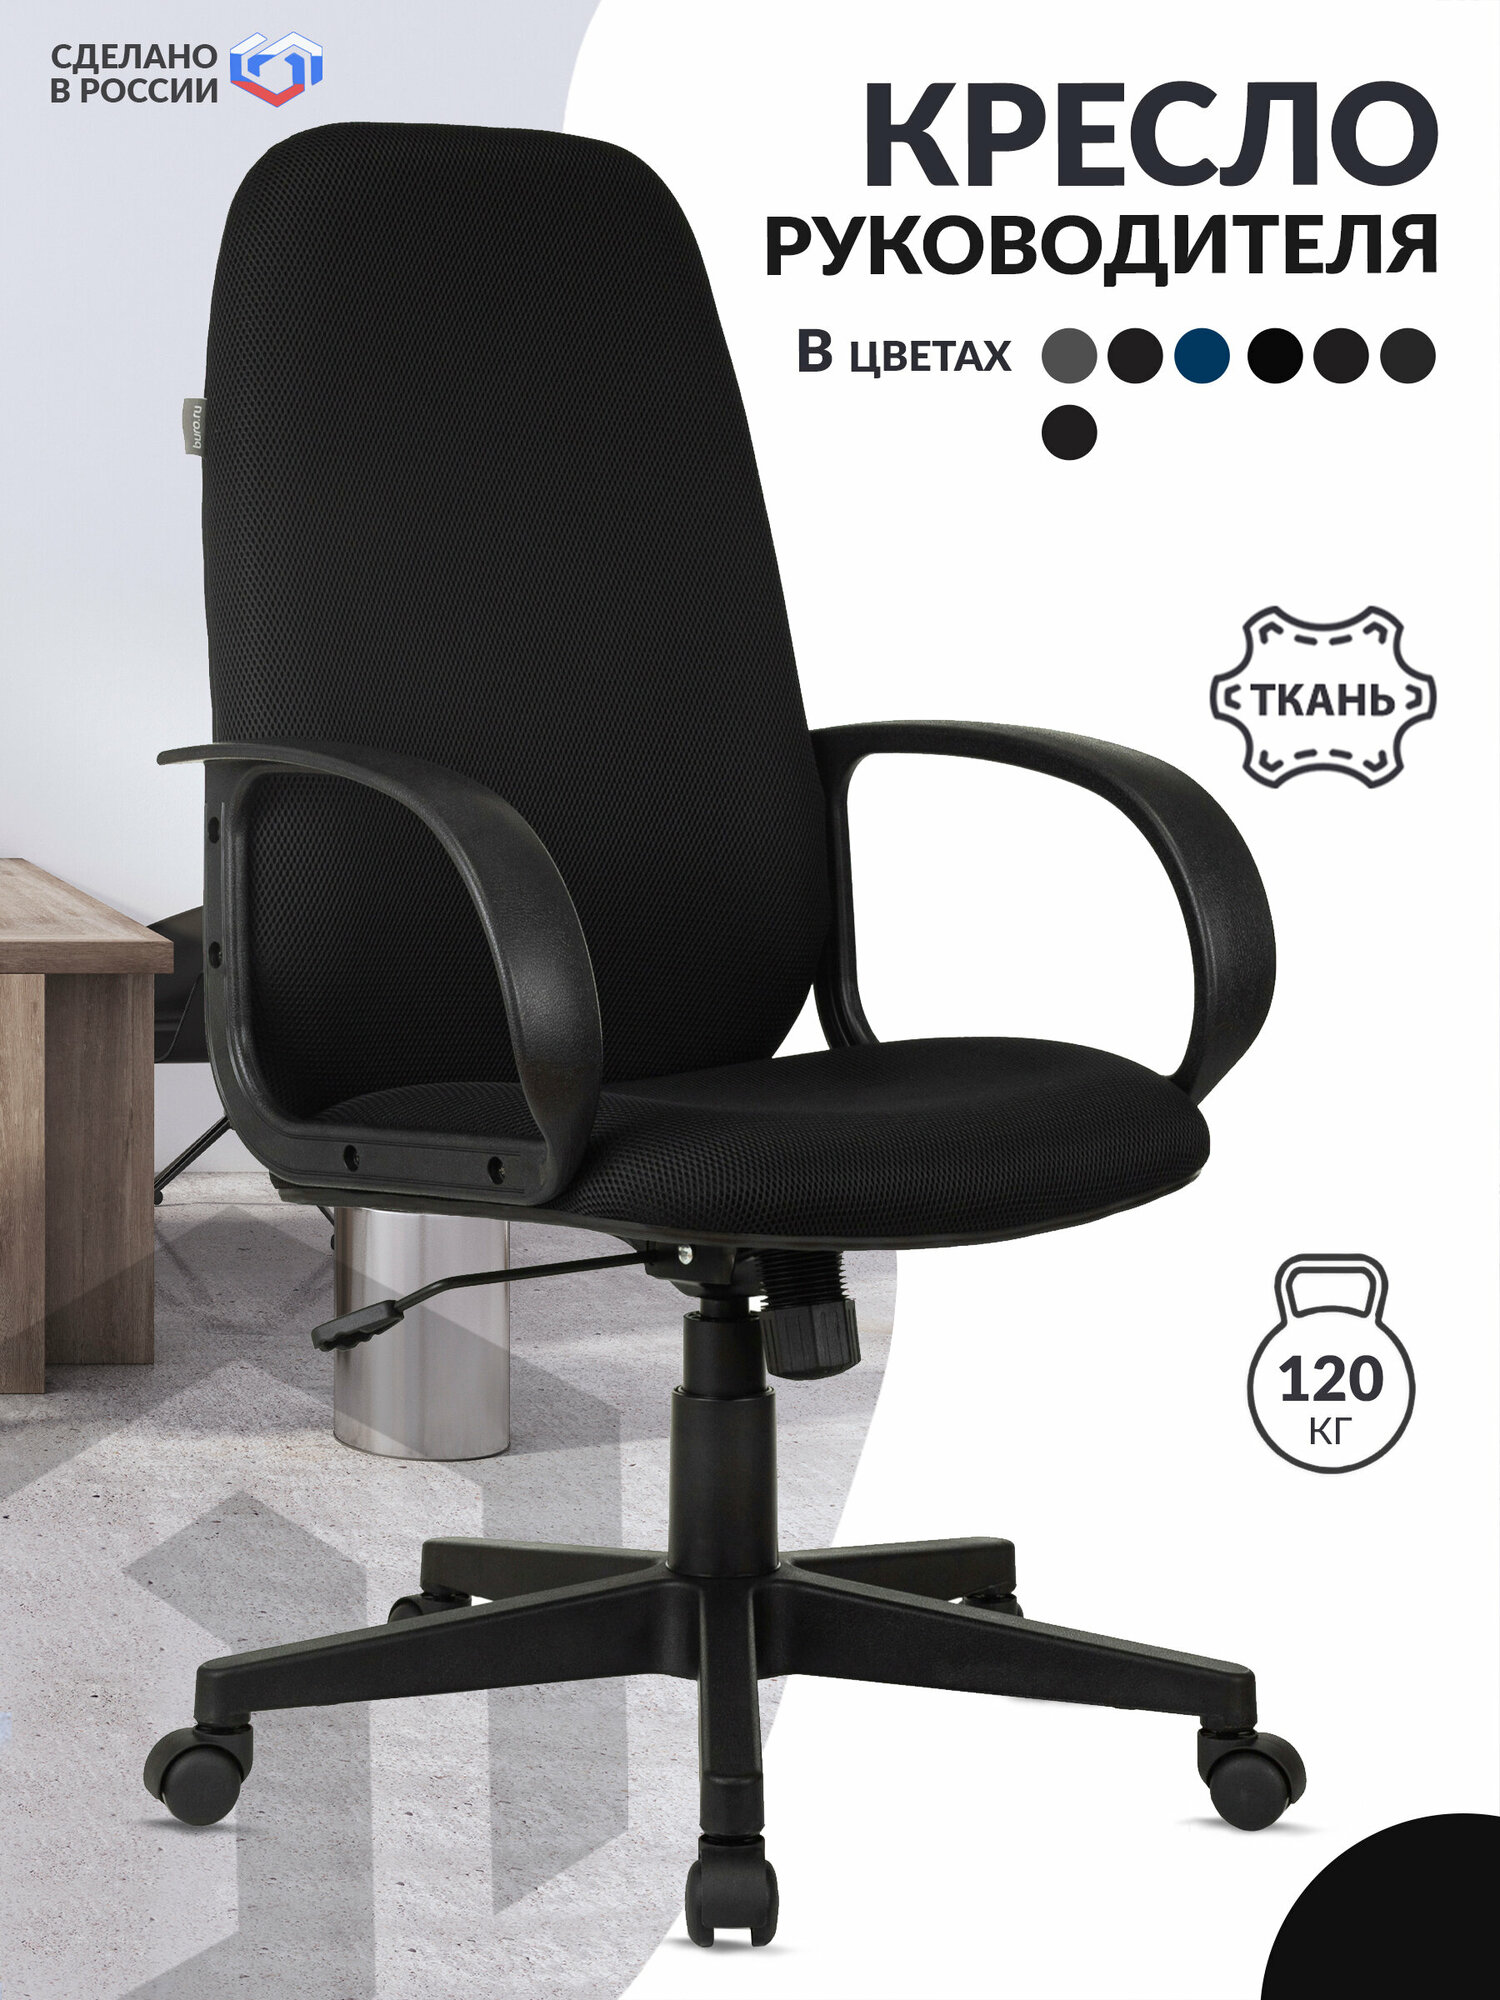 Кресло руководителя Ch-808AXSN черный TW-11 крестовина пластик / Компьютерное кресло для директора, начальника, менеджера